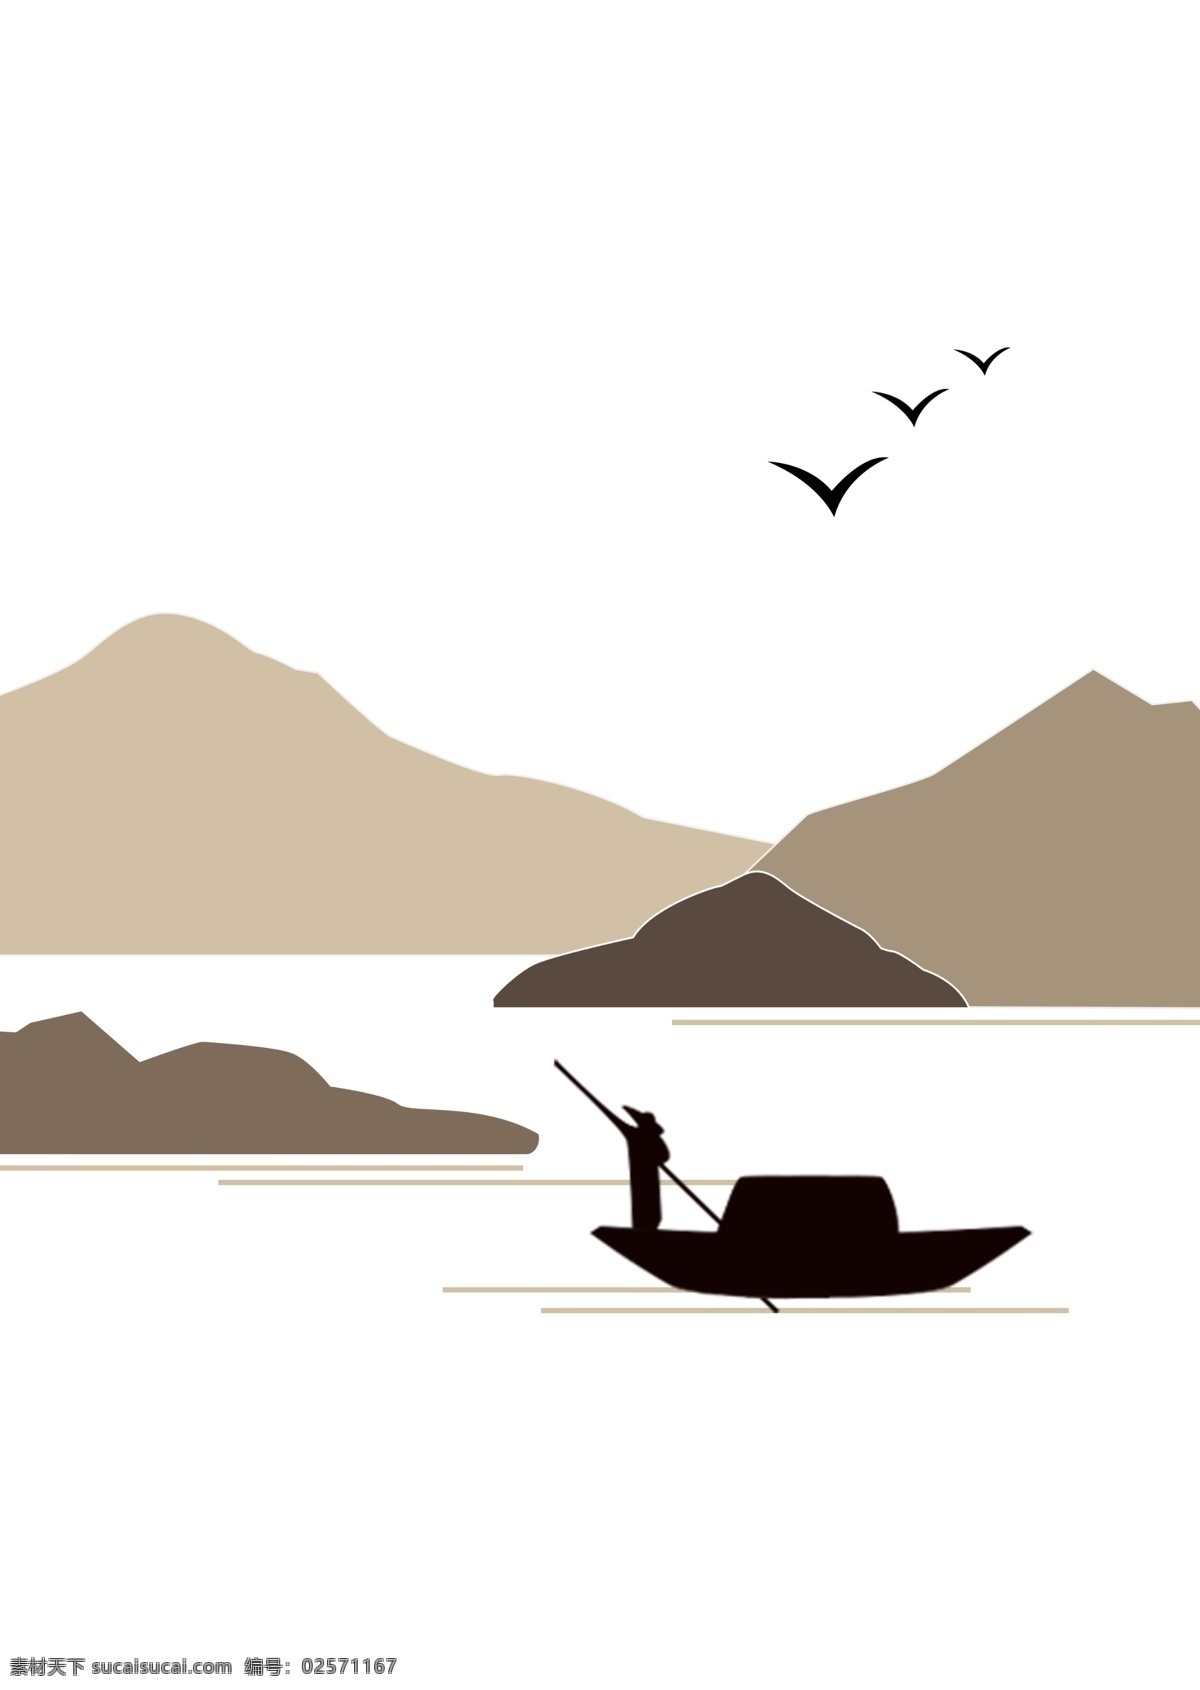 打鱼 山 剪影 捕鱼 船 渔民 自然景观 人文景观